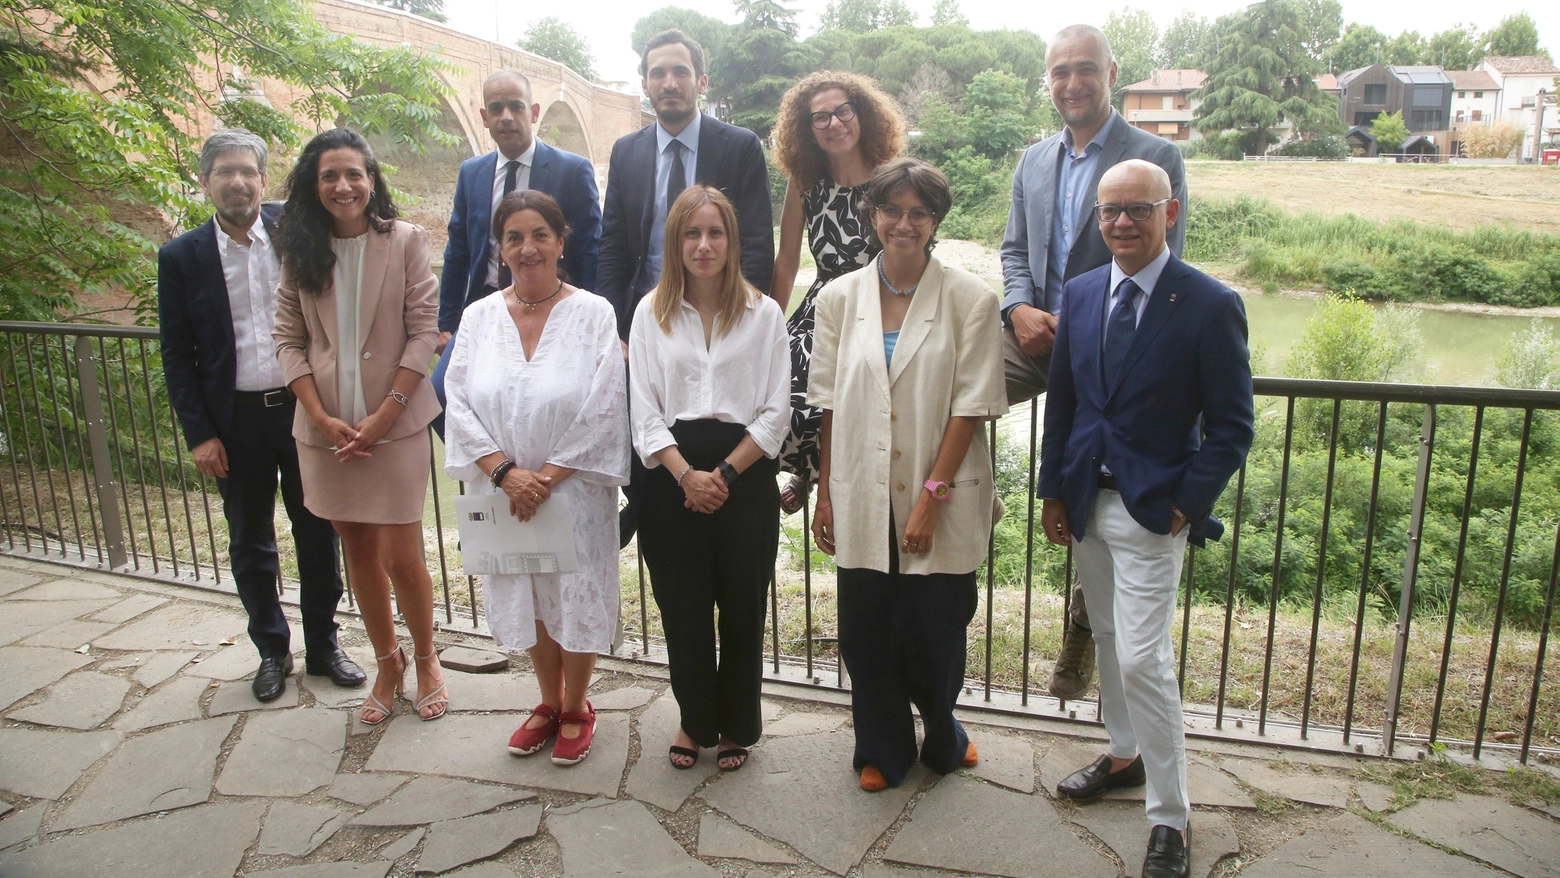 Il sindaco Lattuca ha presentato la nuova giunta di Cesena: "Ecco la squadra di governo: lavoreremo insieme per raggiungere gli obiettivi che ci siamo posti"